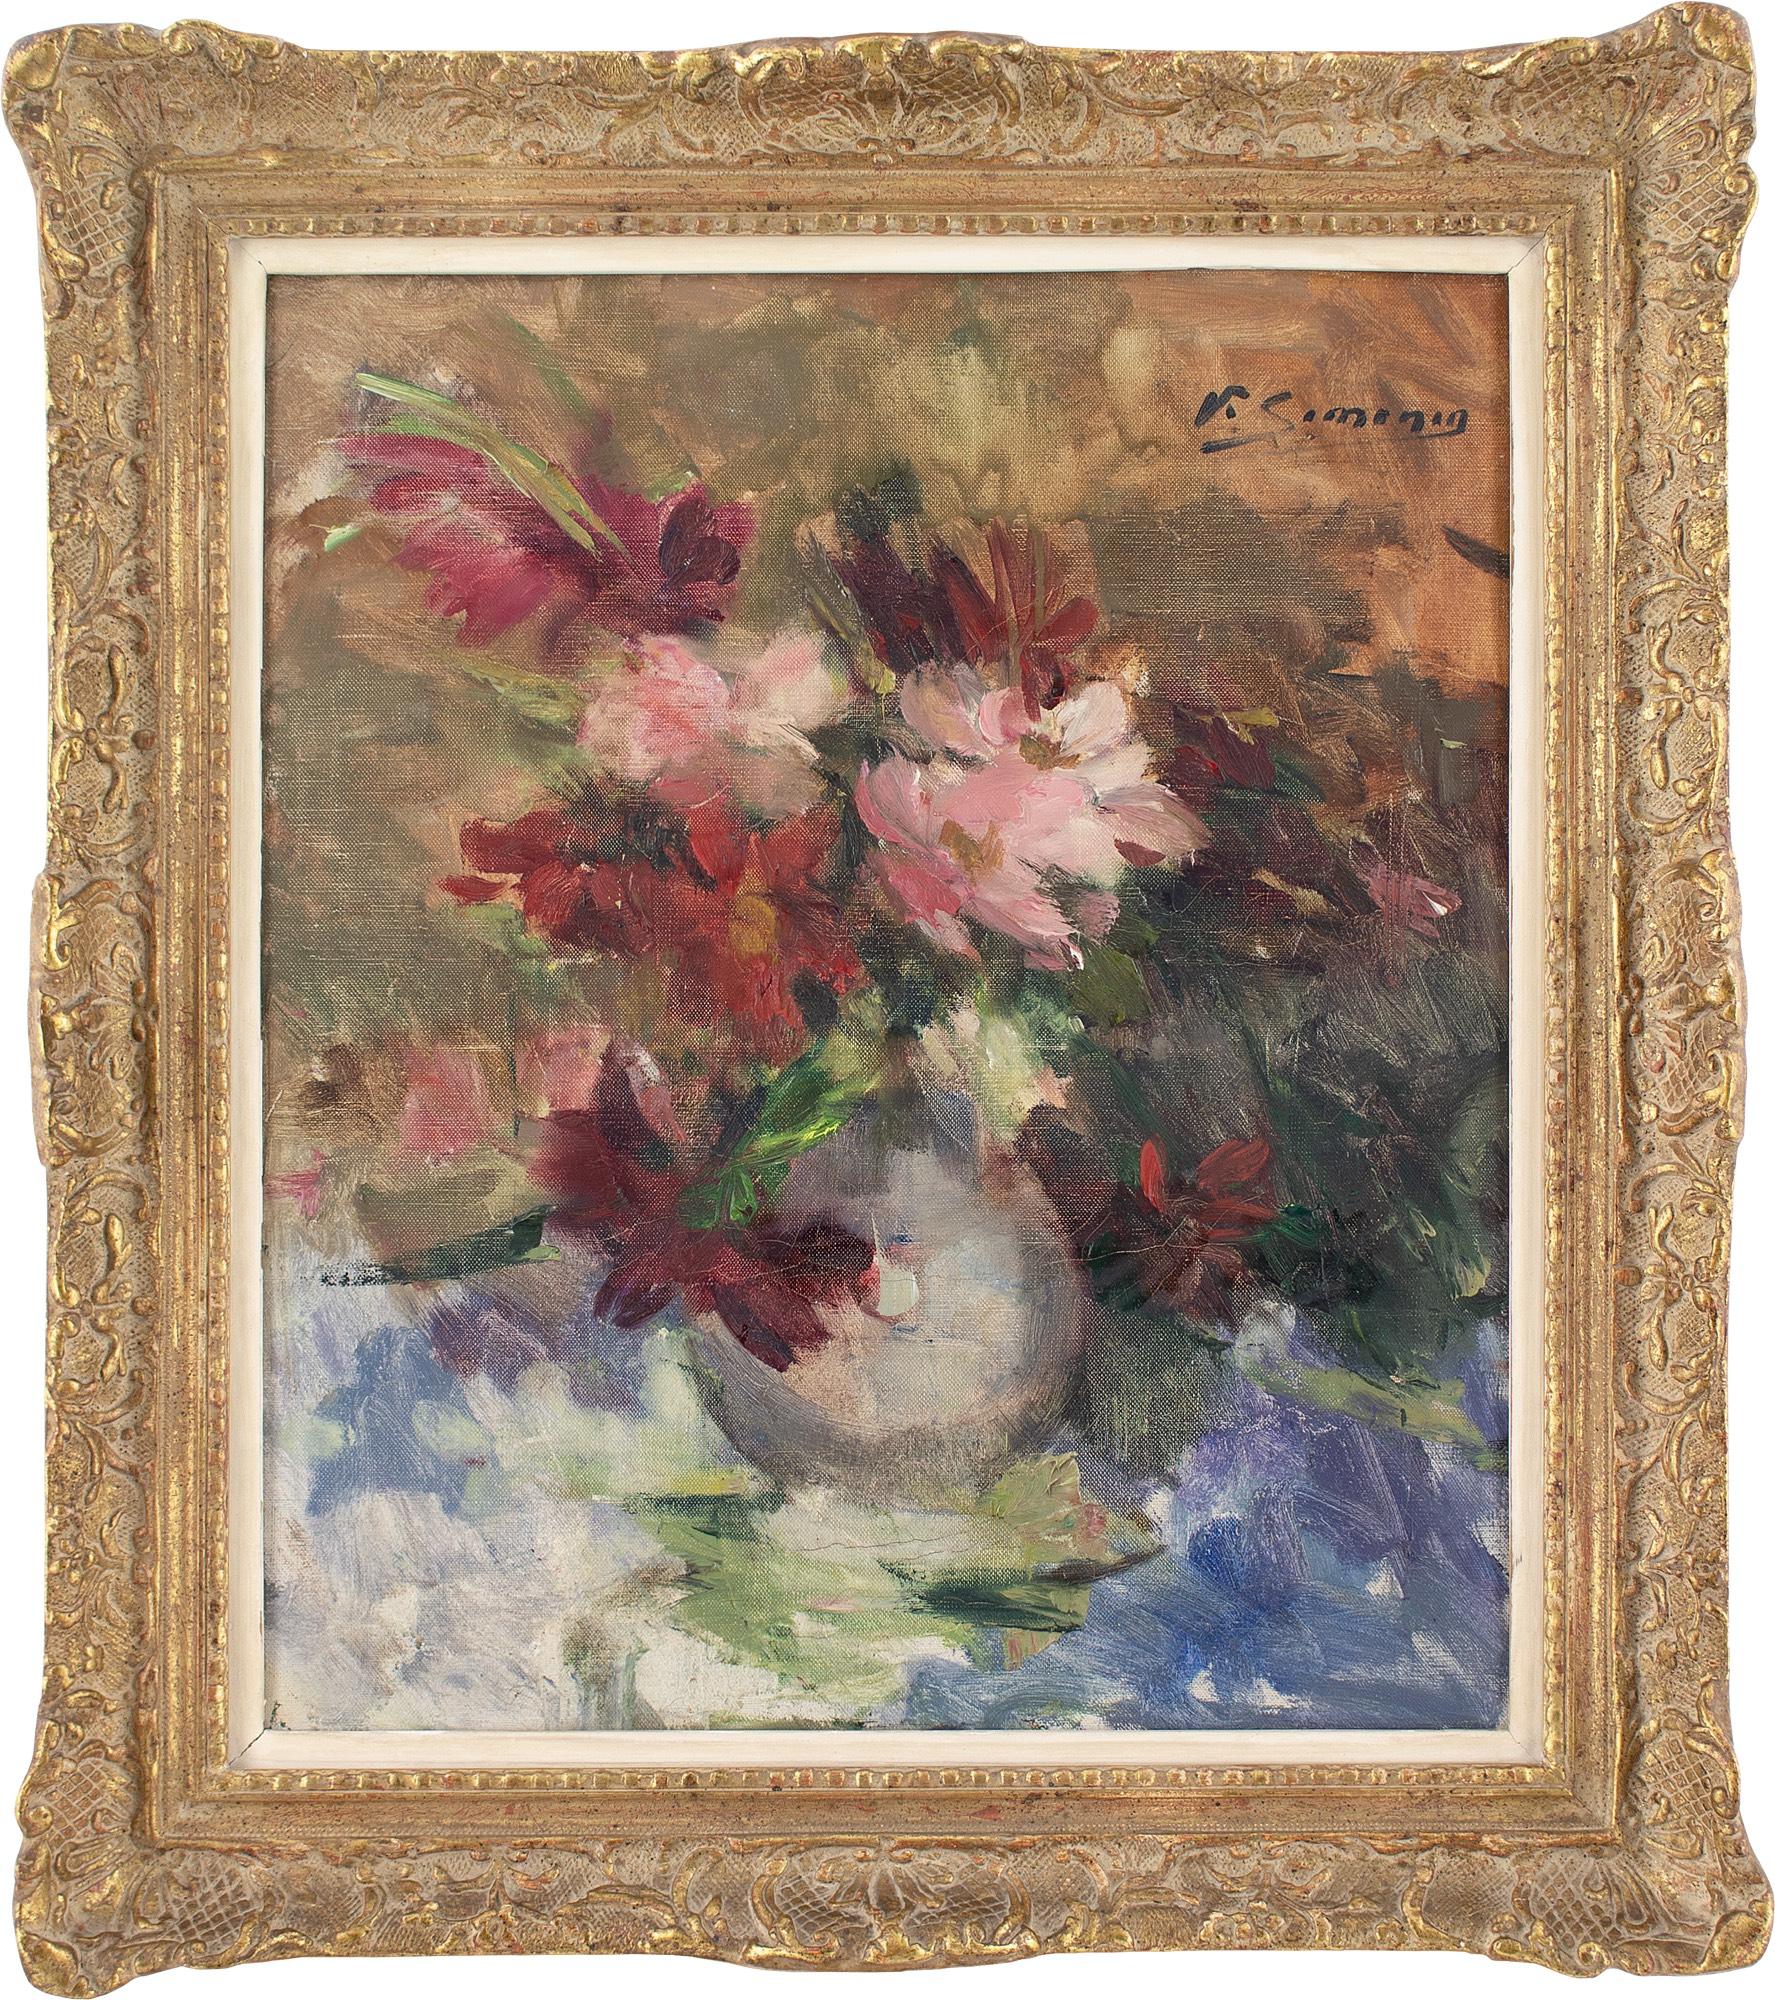 Dieses Ölgemälde des belgischen Künstlers Victor Simonin (1877-1946) von Anfang bis Mitte des 20. Jahrhunderts zeigt eine Vase mit roten und rosa Blumen.

Simonin, der als "zarter Bohemien" beschrieben wurde, war vor allem für seine